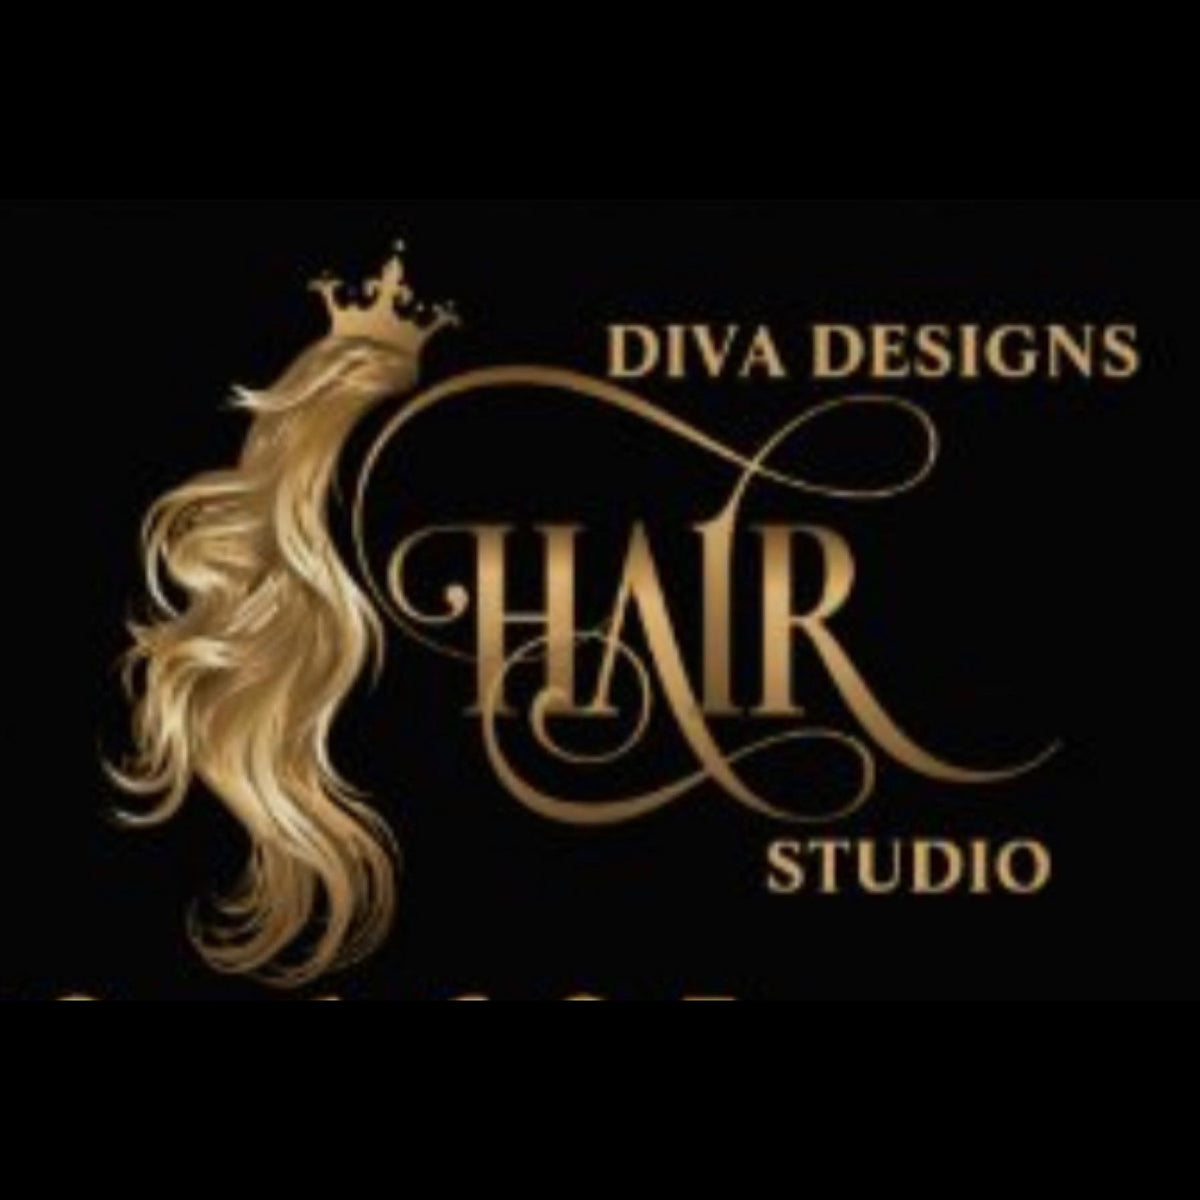 DIVA DESIGNS HAIR STUDIO Designs Studio